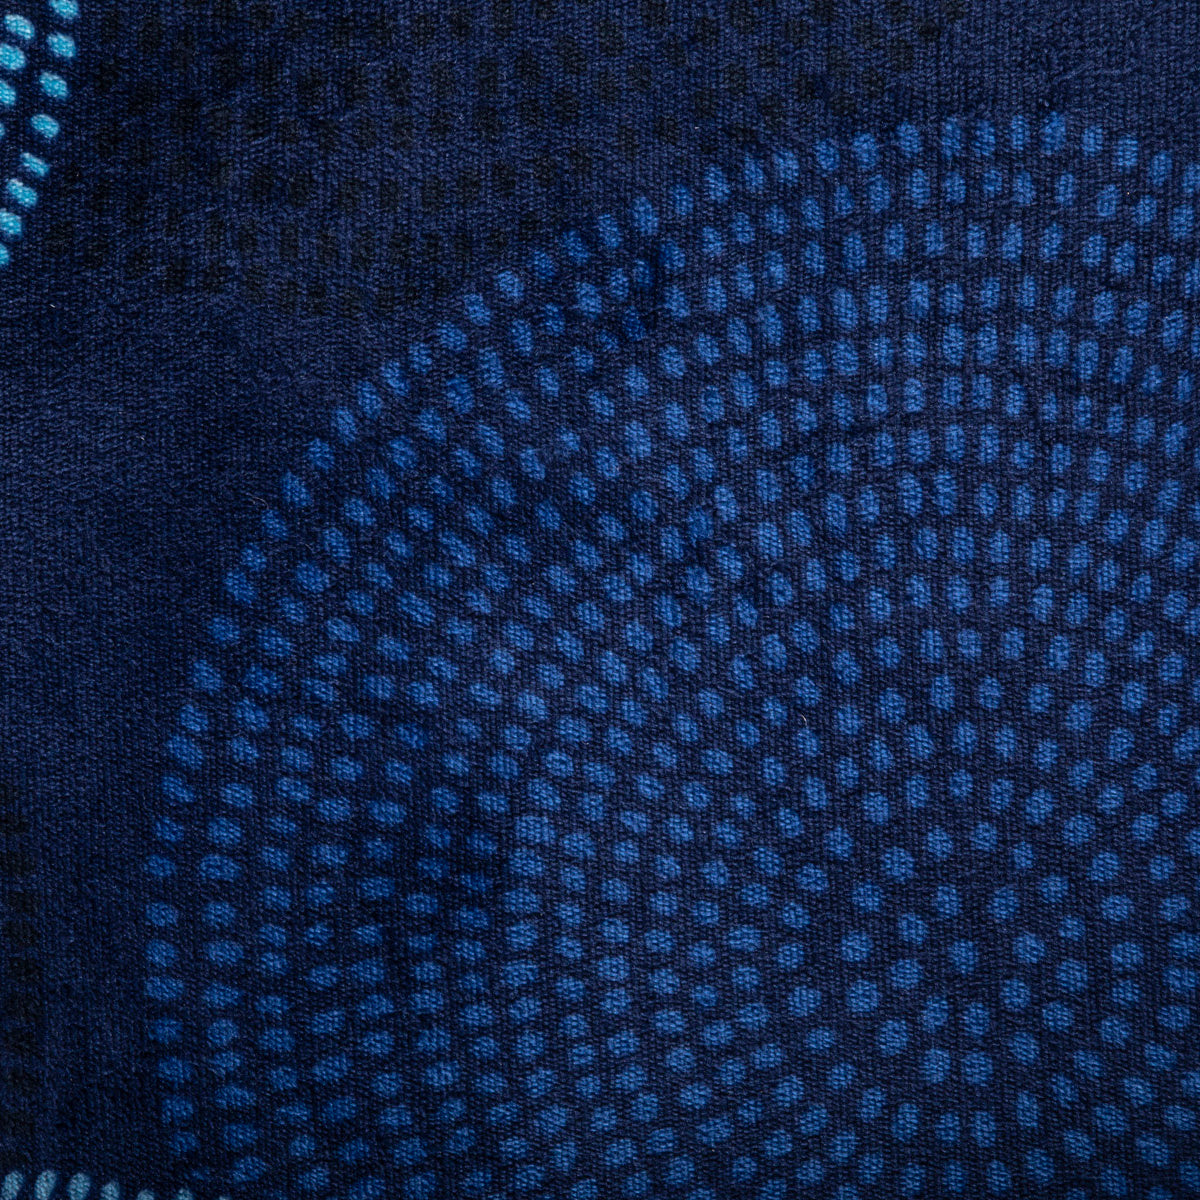 Cobertor Flannel  Extra Suave Cobalto